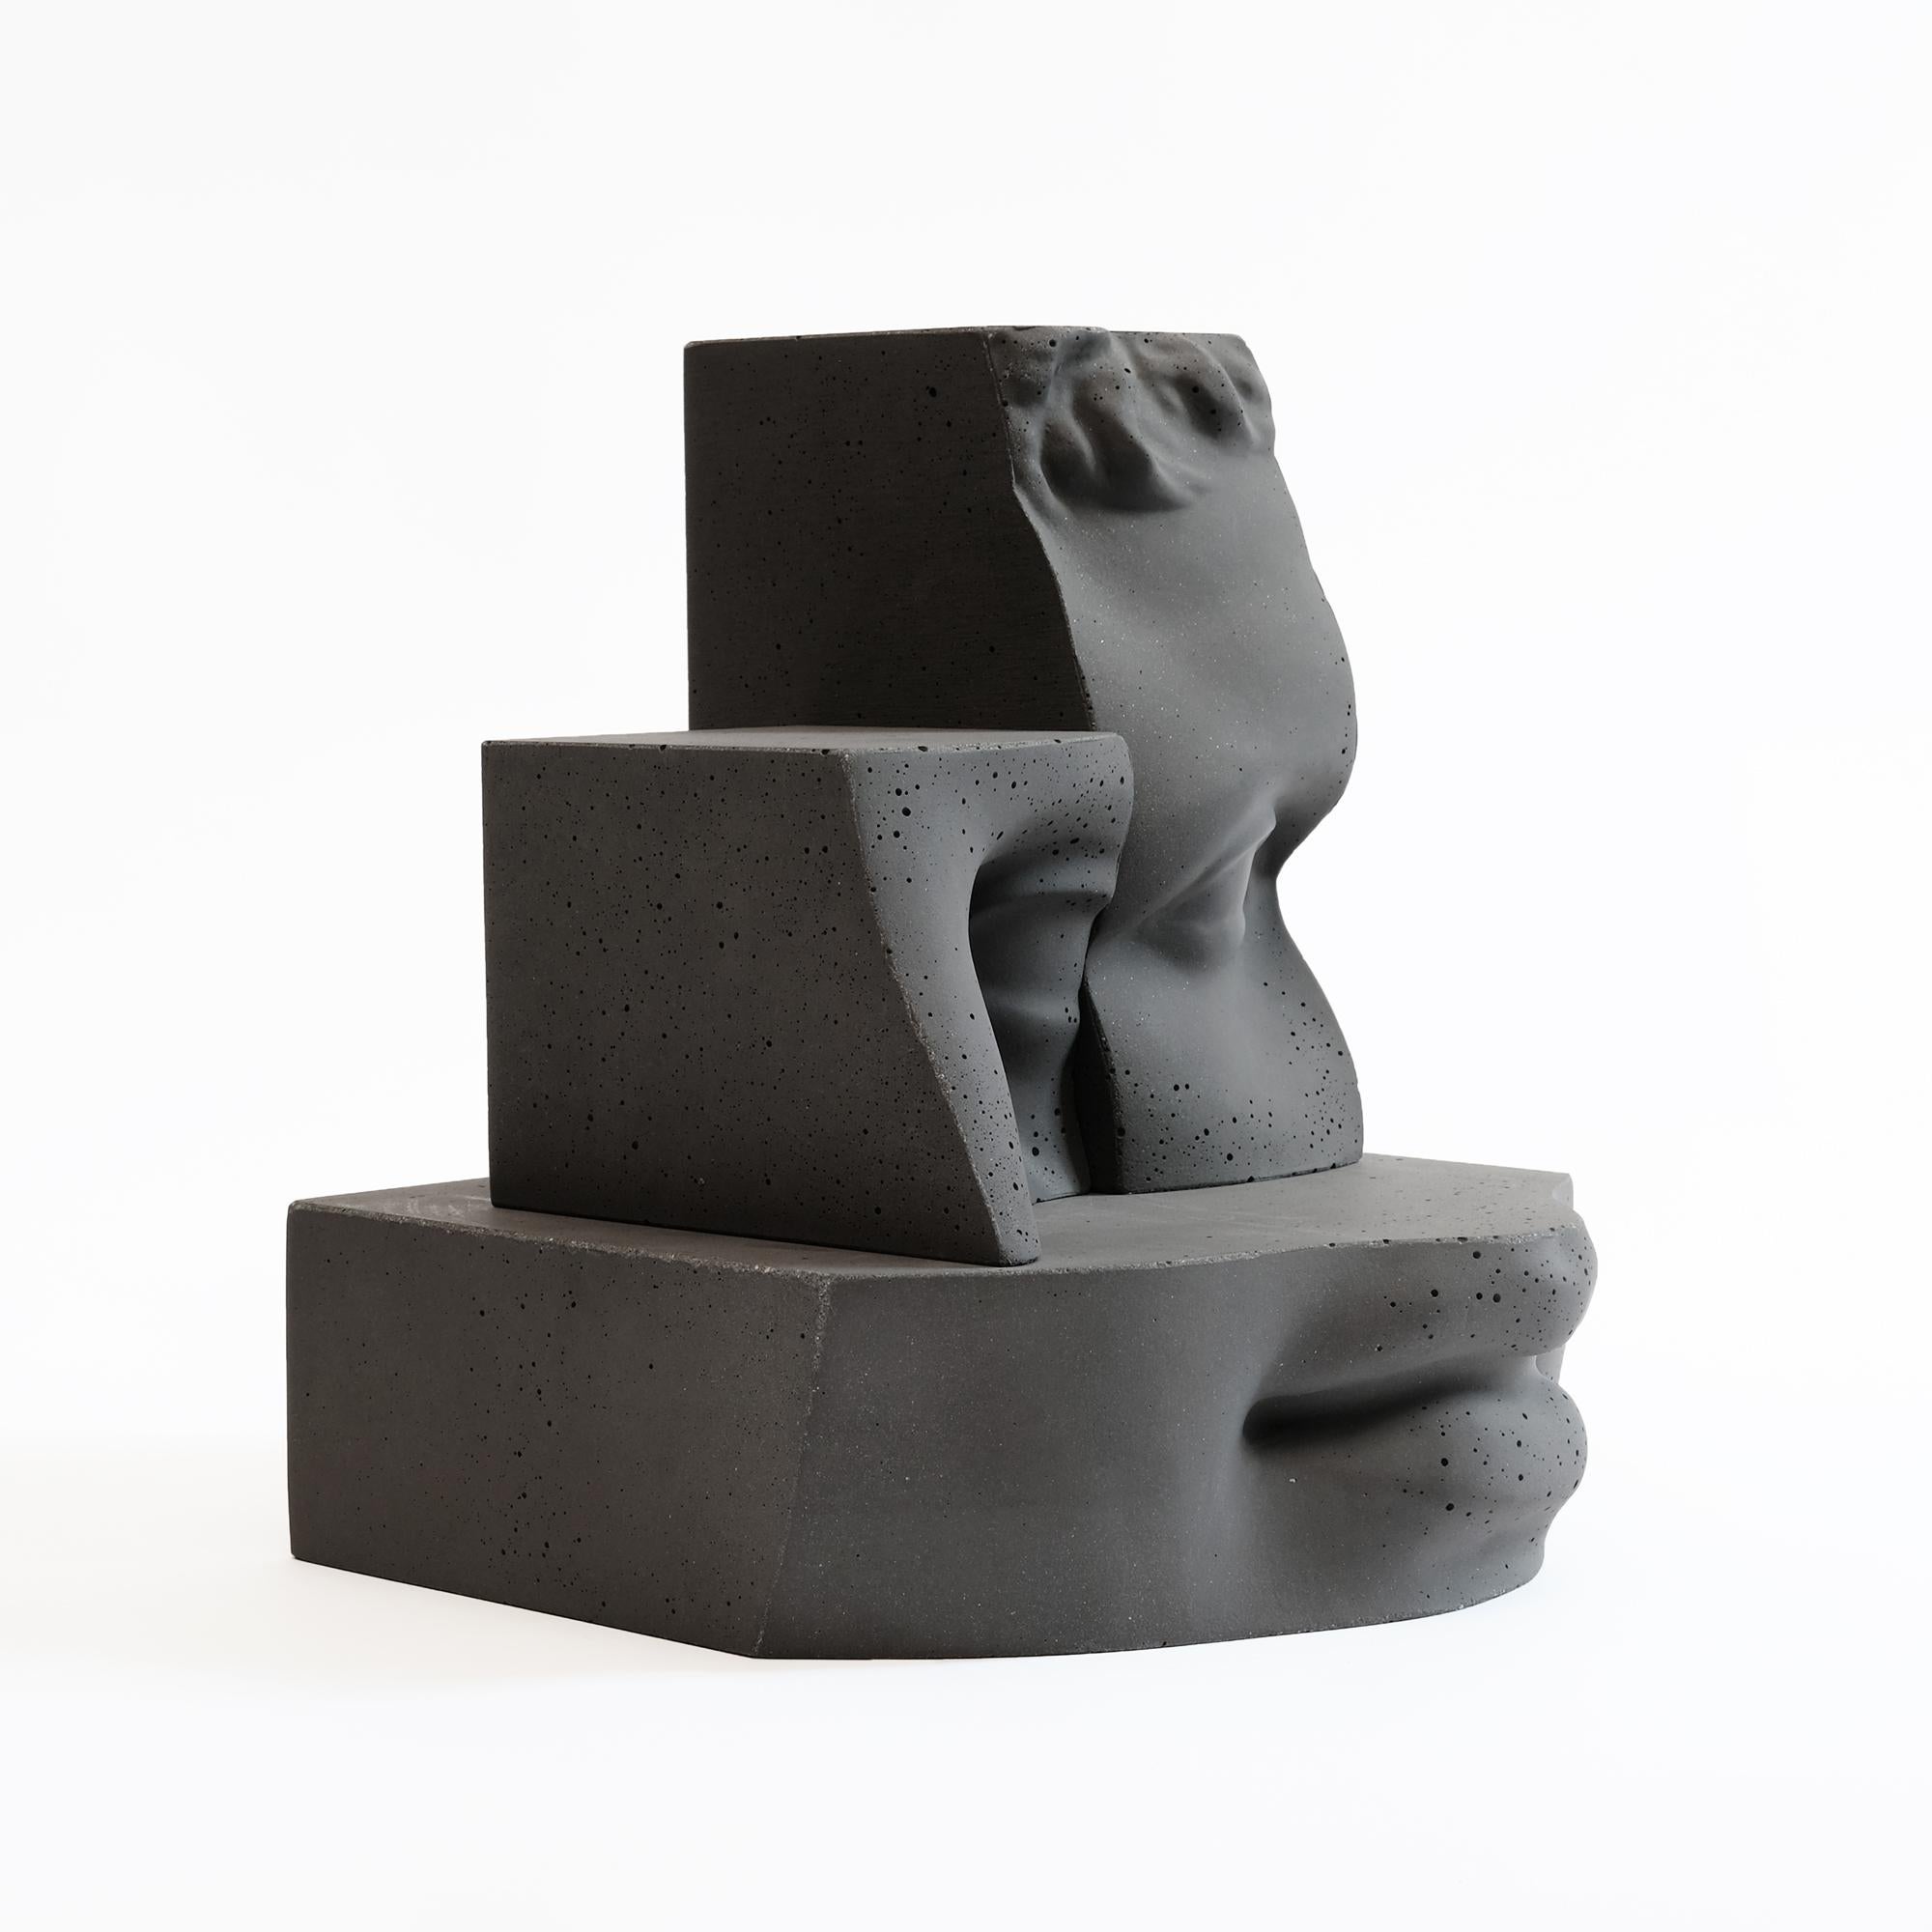 Zeitgenössische Paolo Giordano Hermes abstrakte Skulptur Beton Zementguss grau

Hermes ist eine konkrete Skulptur. Es ist Teil eines großen Werks, das ebenfalls fotografisch ist: Digital Journey into the Classic